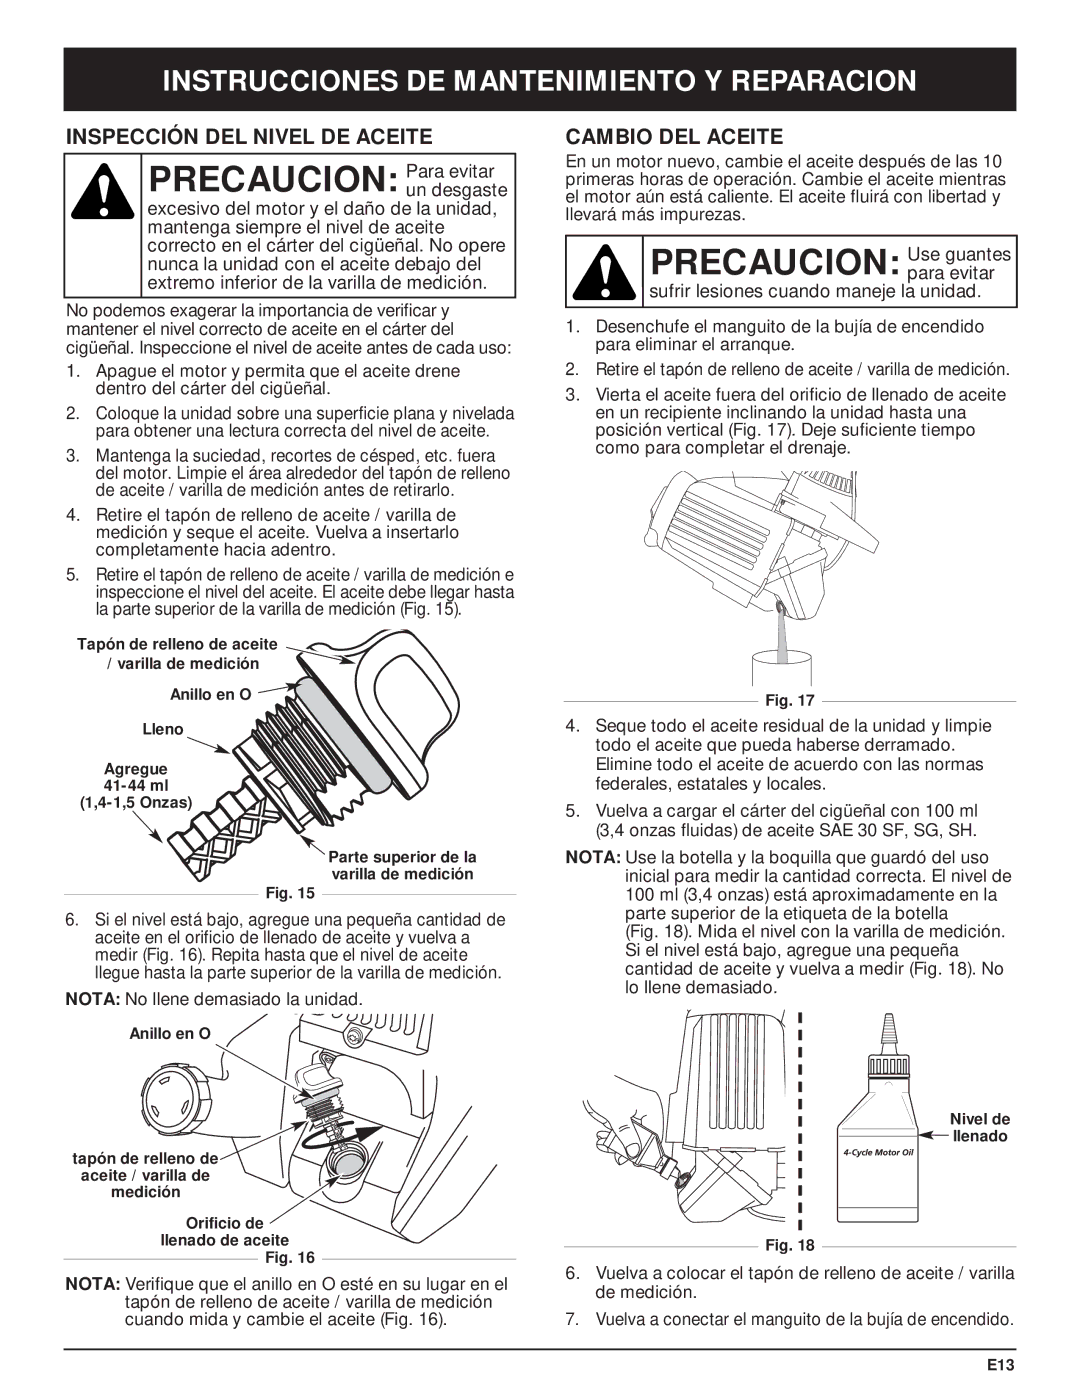 Craftsman 316.29271 Precaucion Para evitar, Precaucion Use guantes, Inspección DEL Nivel DE Aceite, Cambio DEL Aceite 